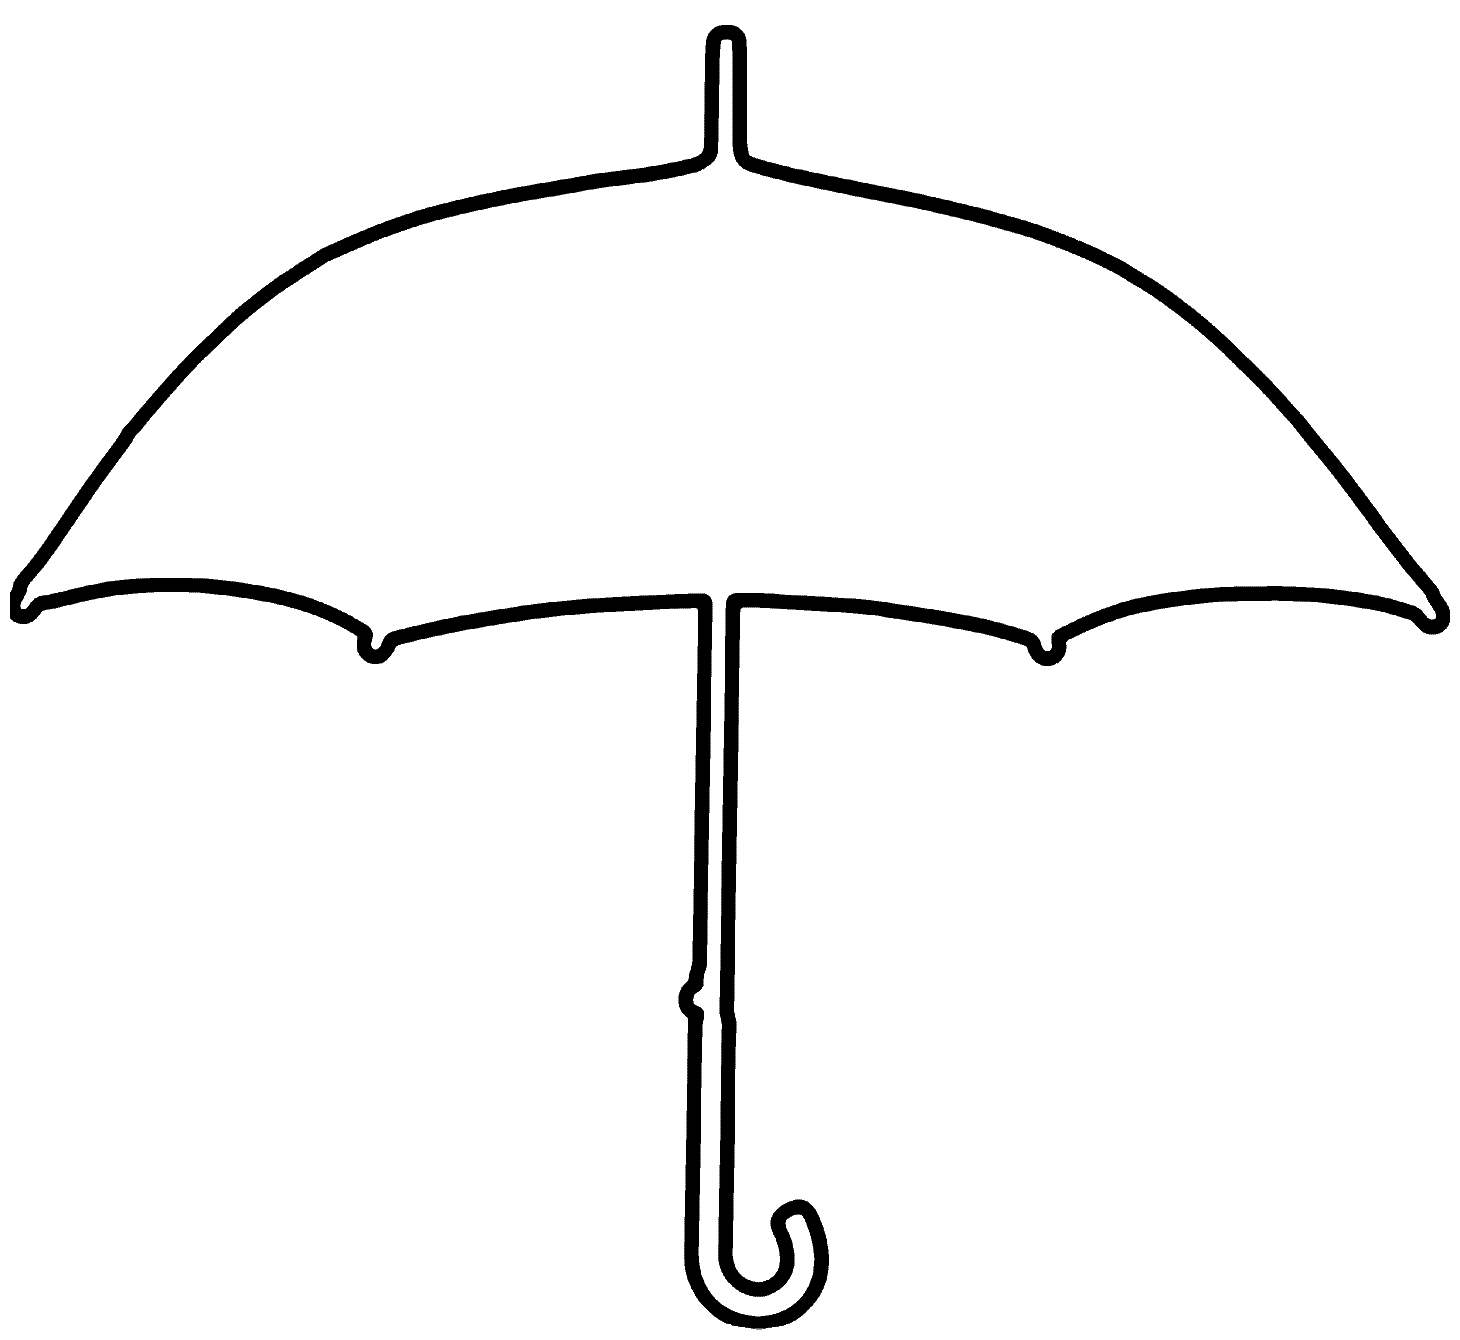 Clip Art Of An Umbrella Free Download Png Clipart